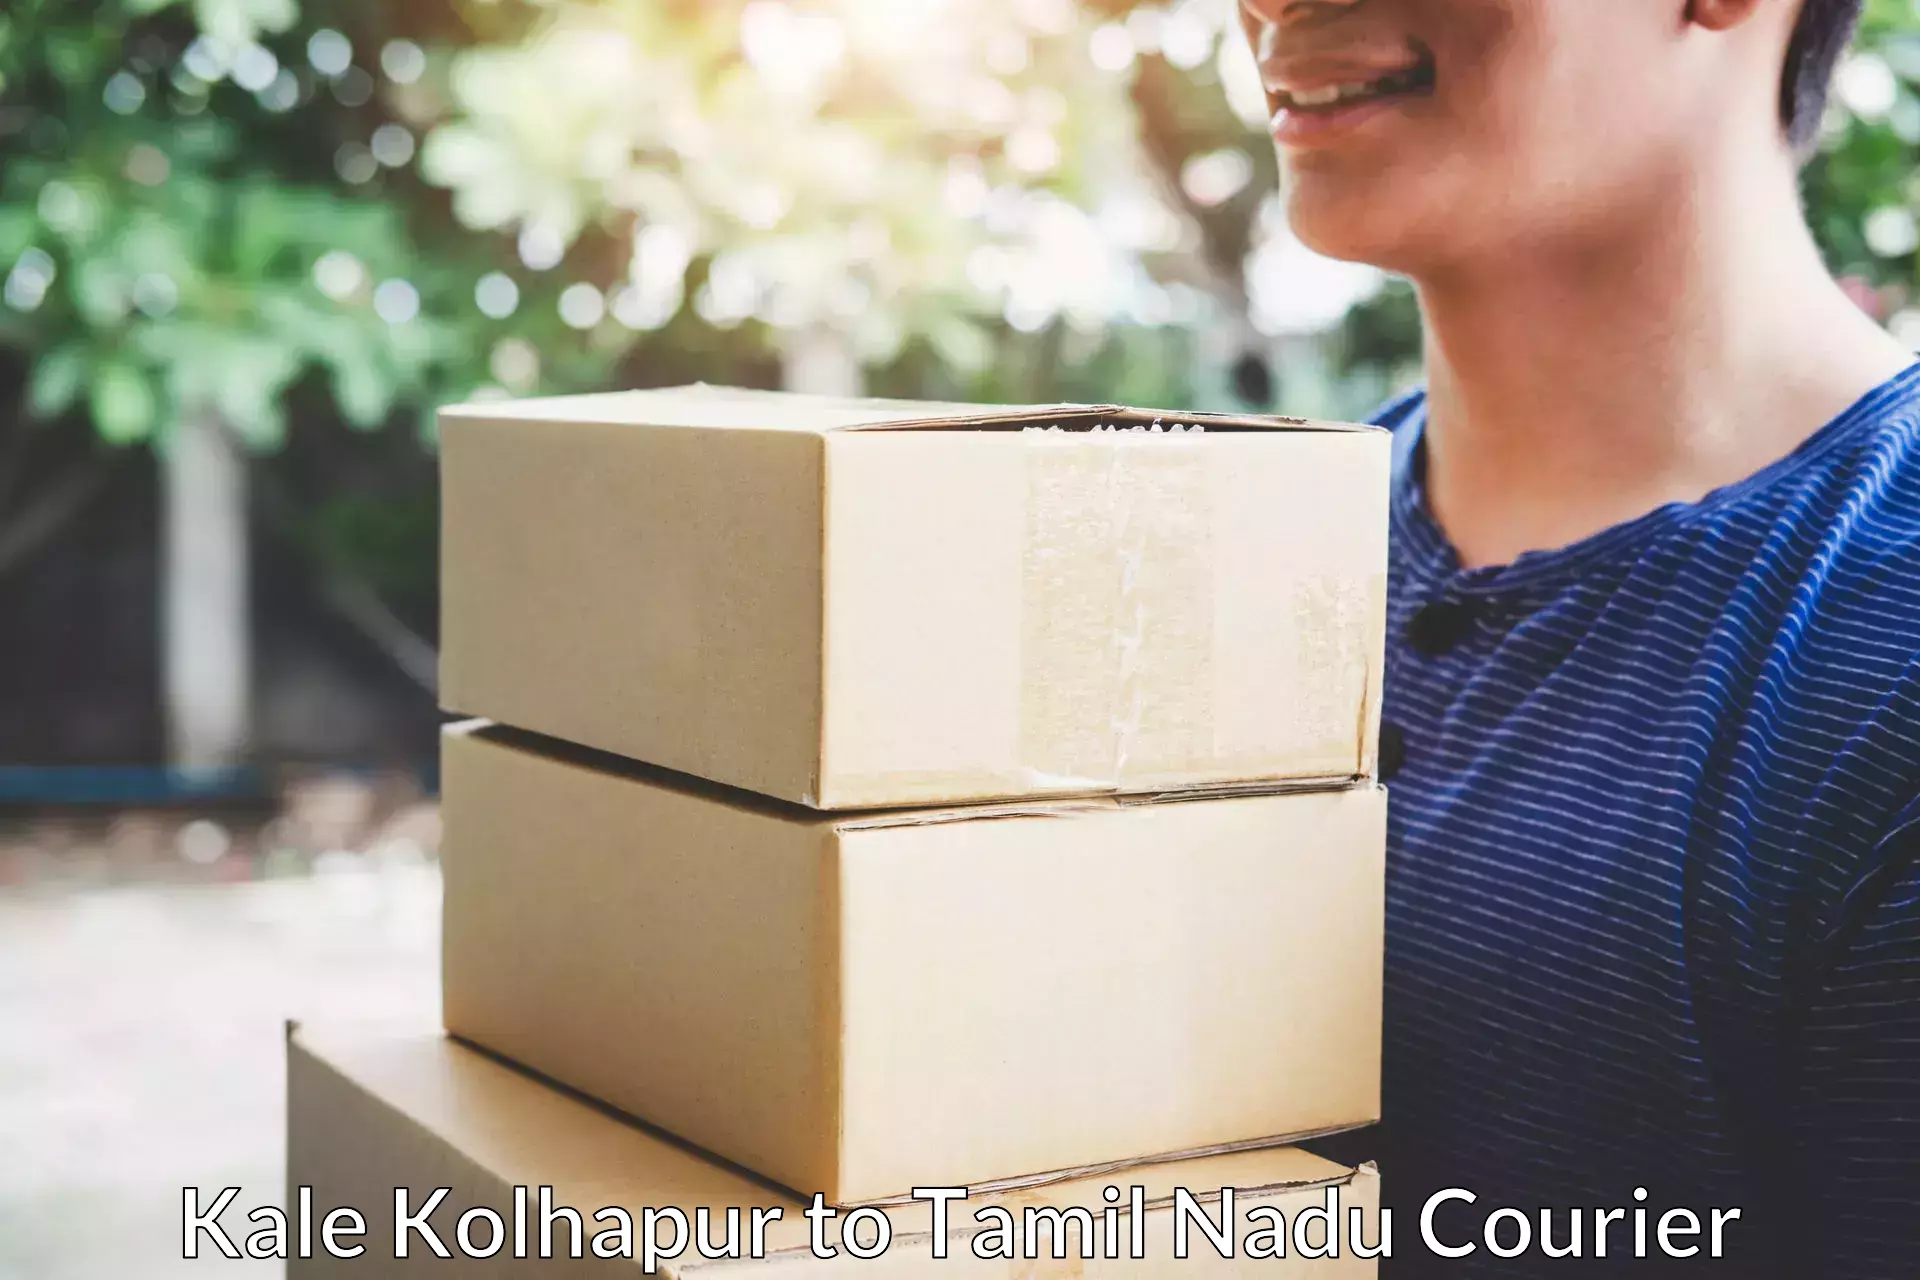 Quality furniture transport Kale Kolhapur to Ambattur